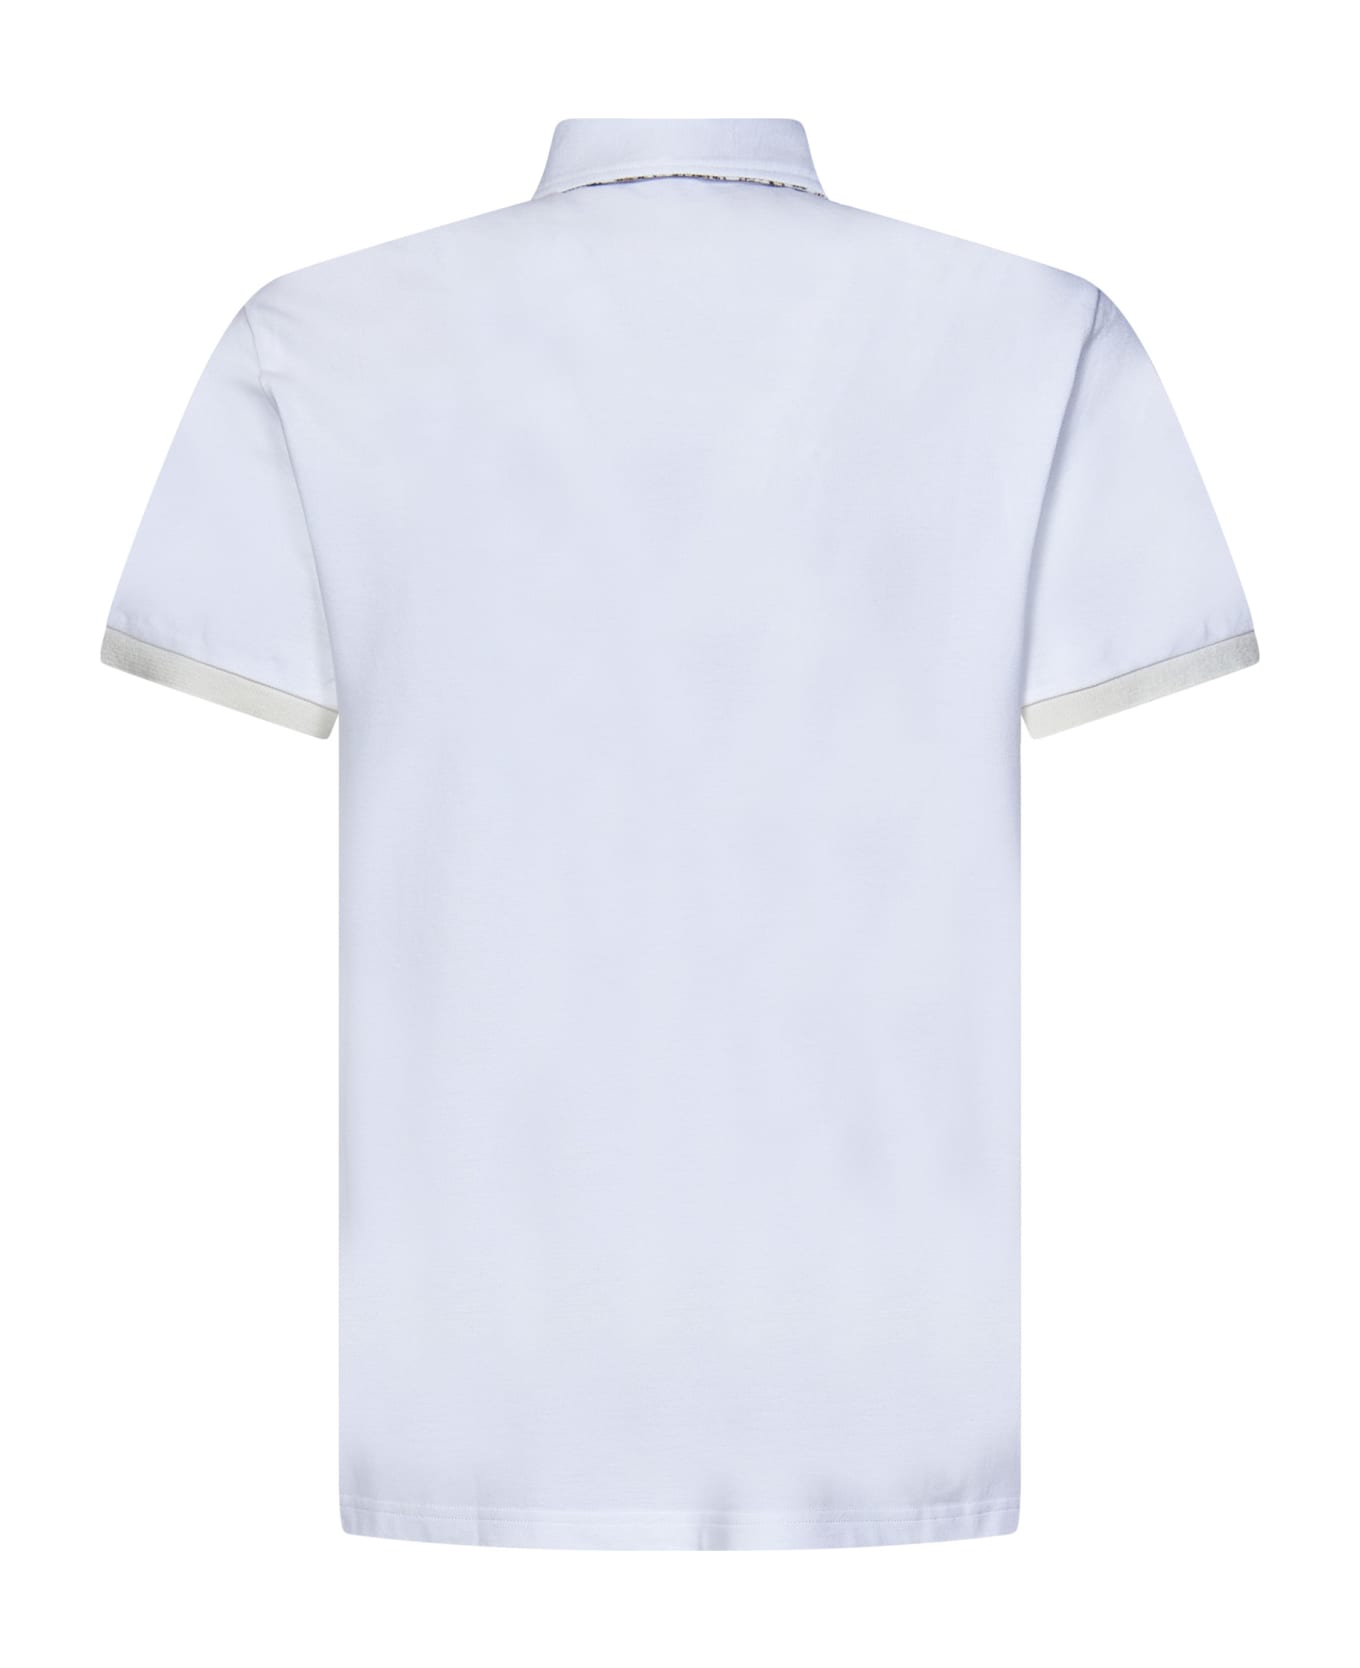 Etro Polo Shirt - White